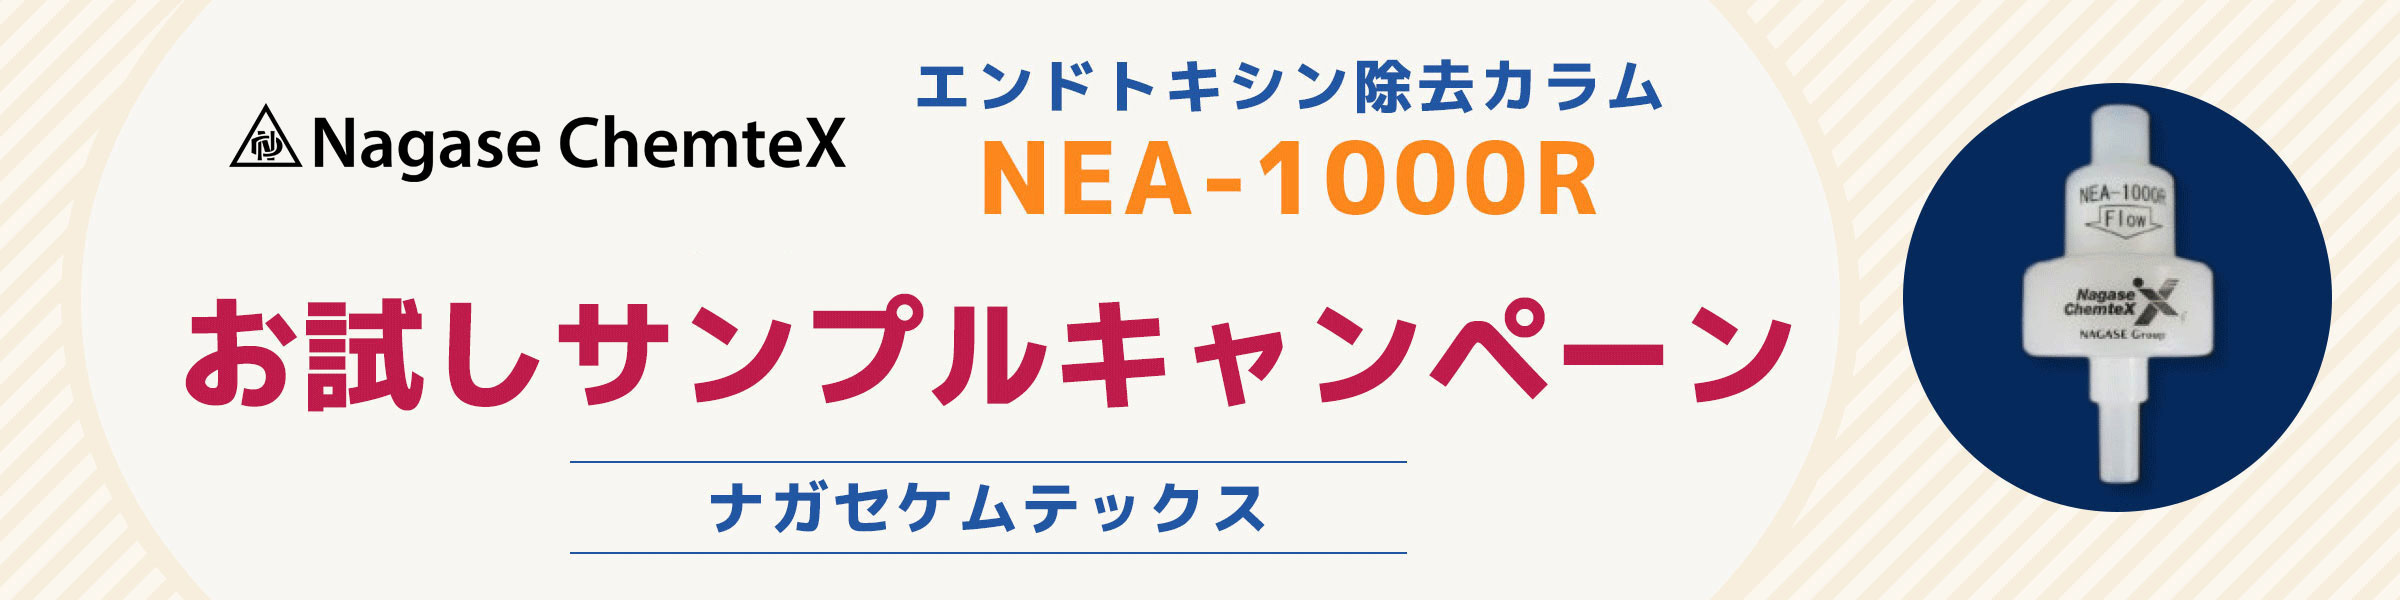 NEA-1000R（エンドトキシン除去カラム）お試しサンプルキャンペーン実施中‼